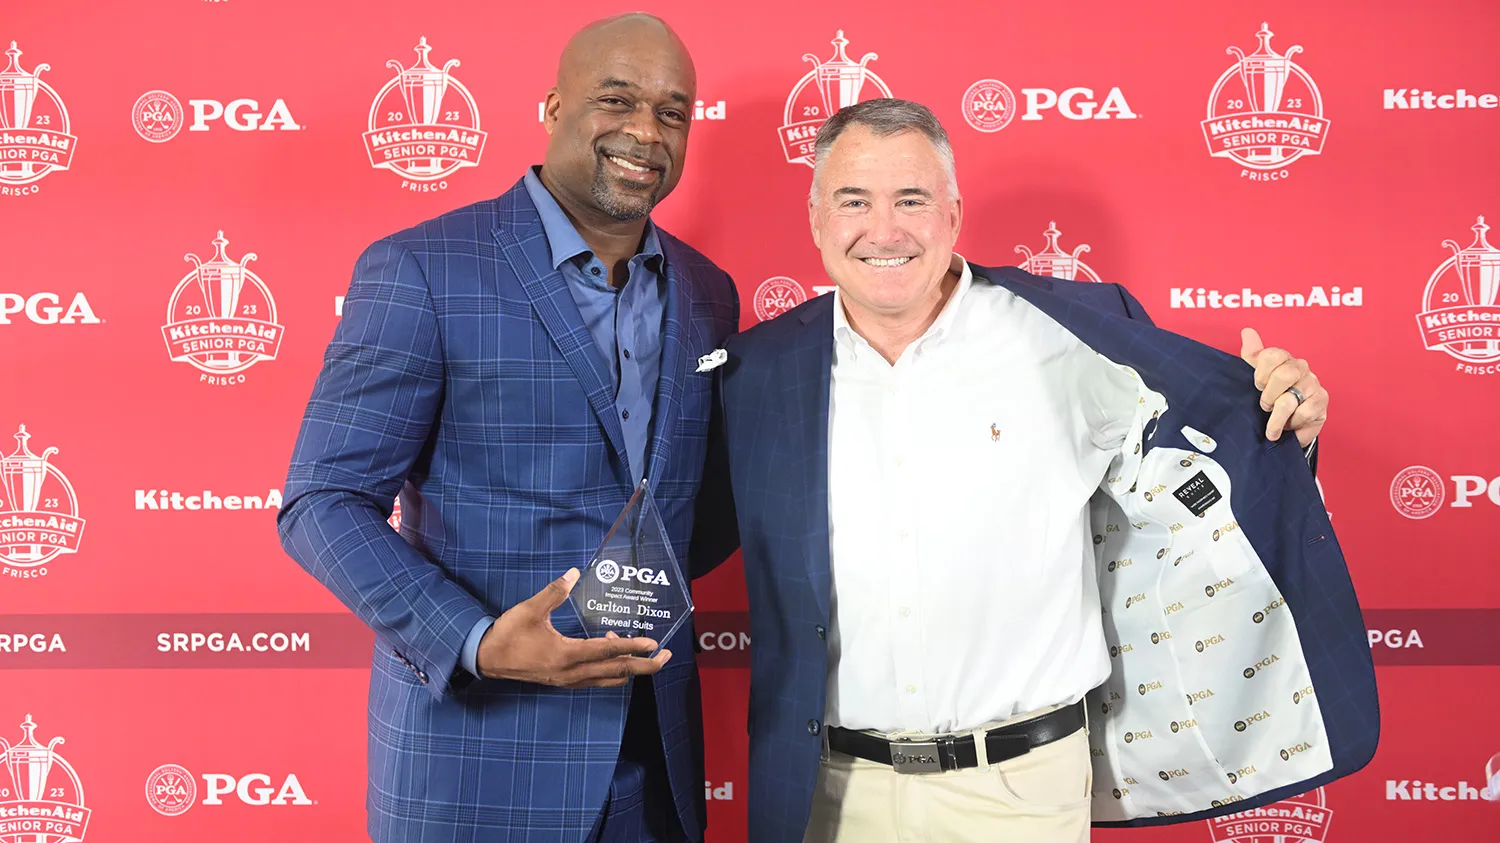 Carlton holding an award from PGA.